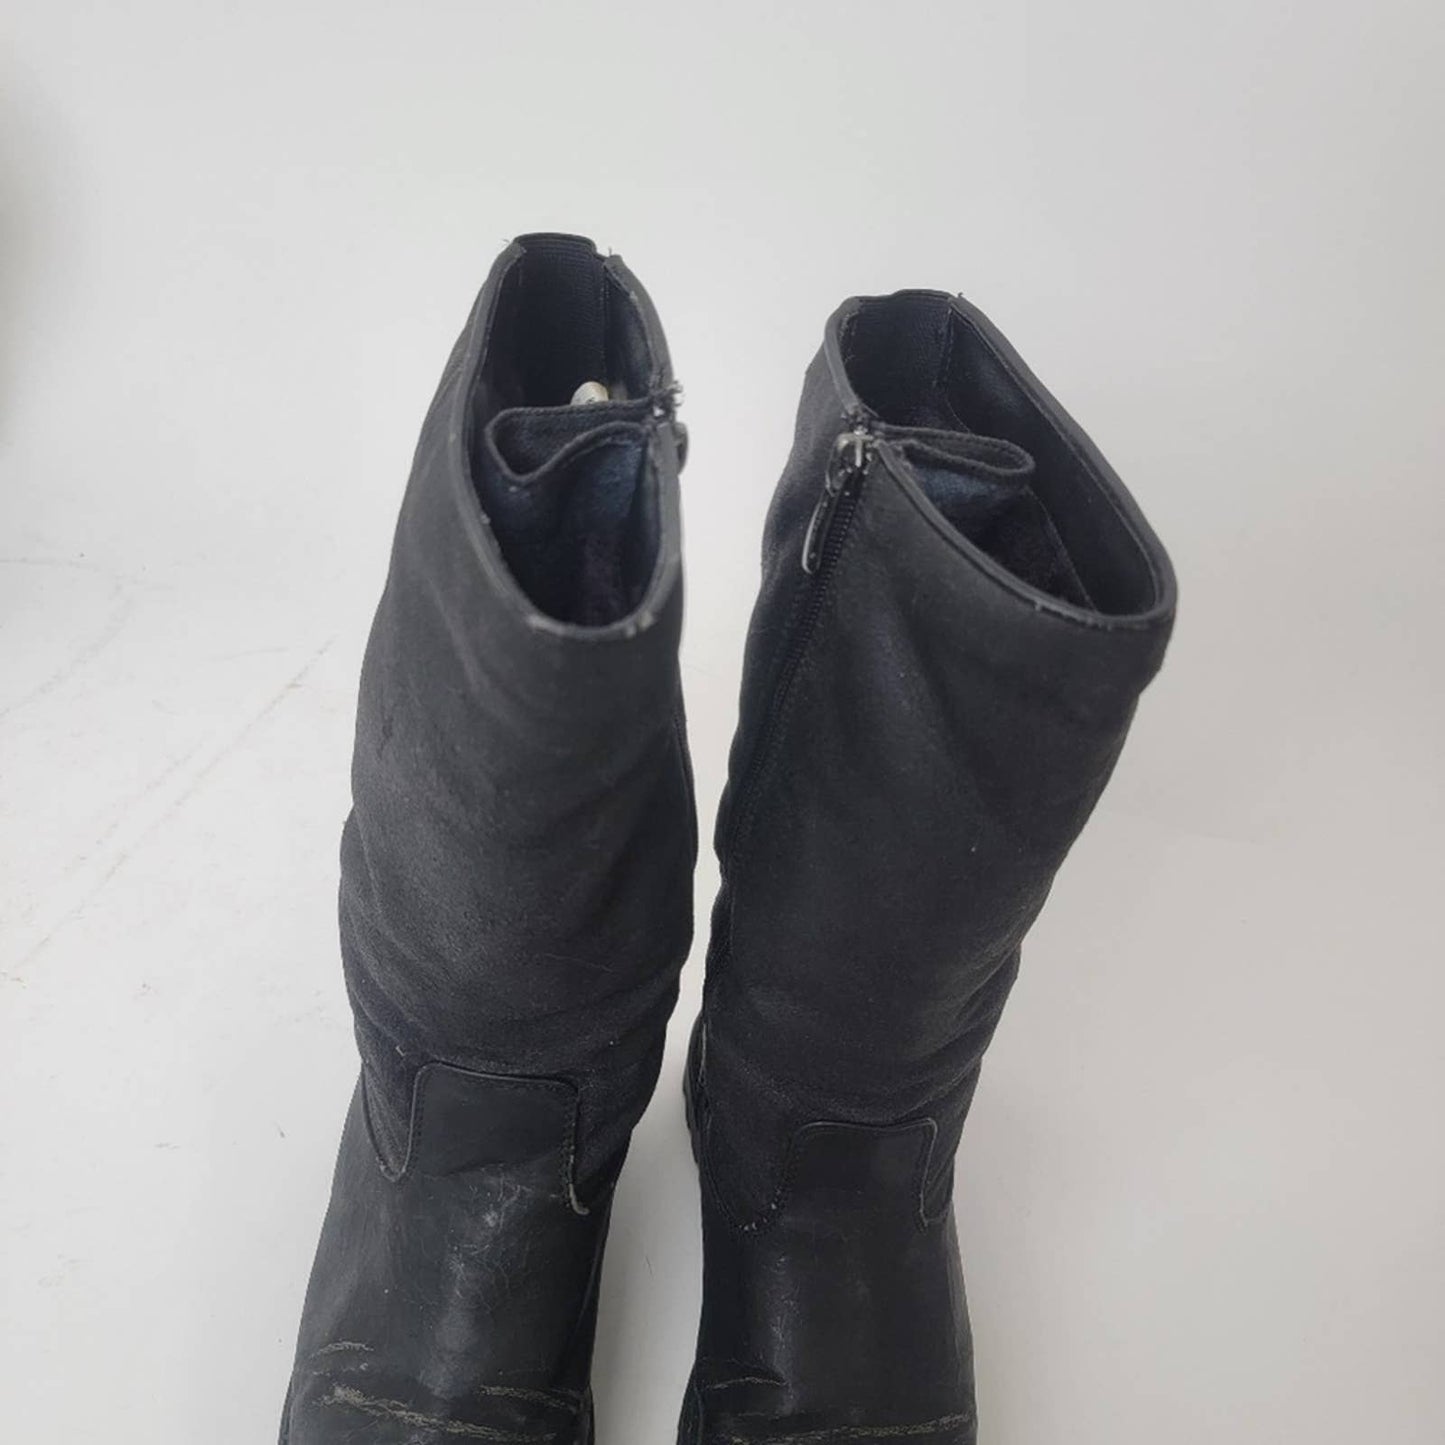 Khombu Black Snow Boots - 6